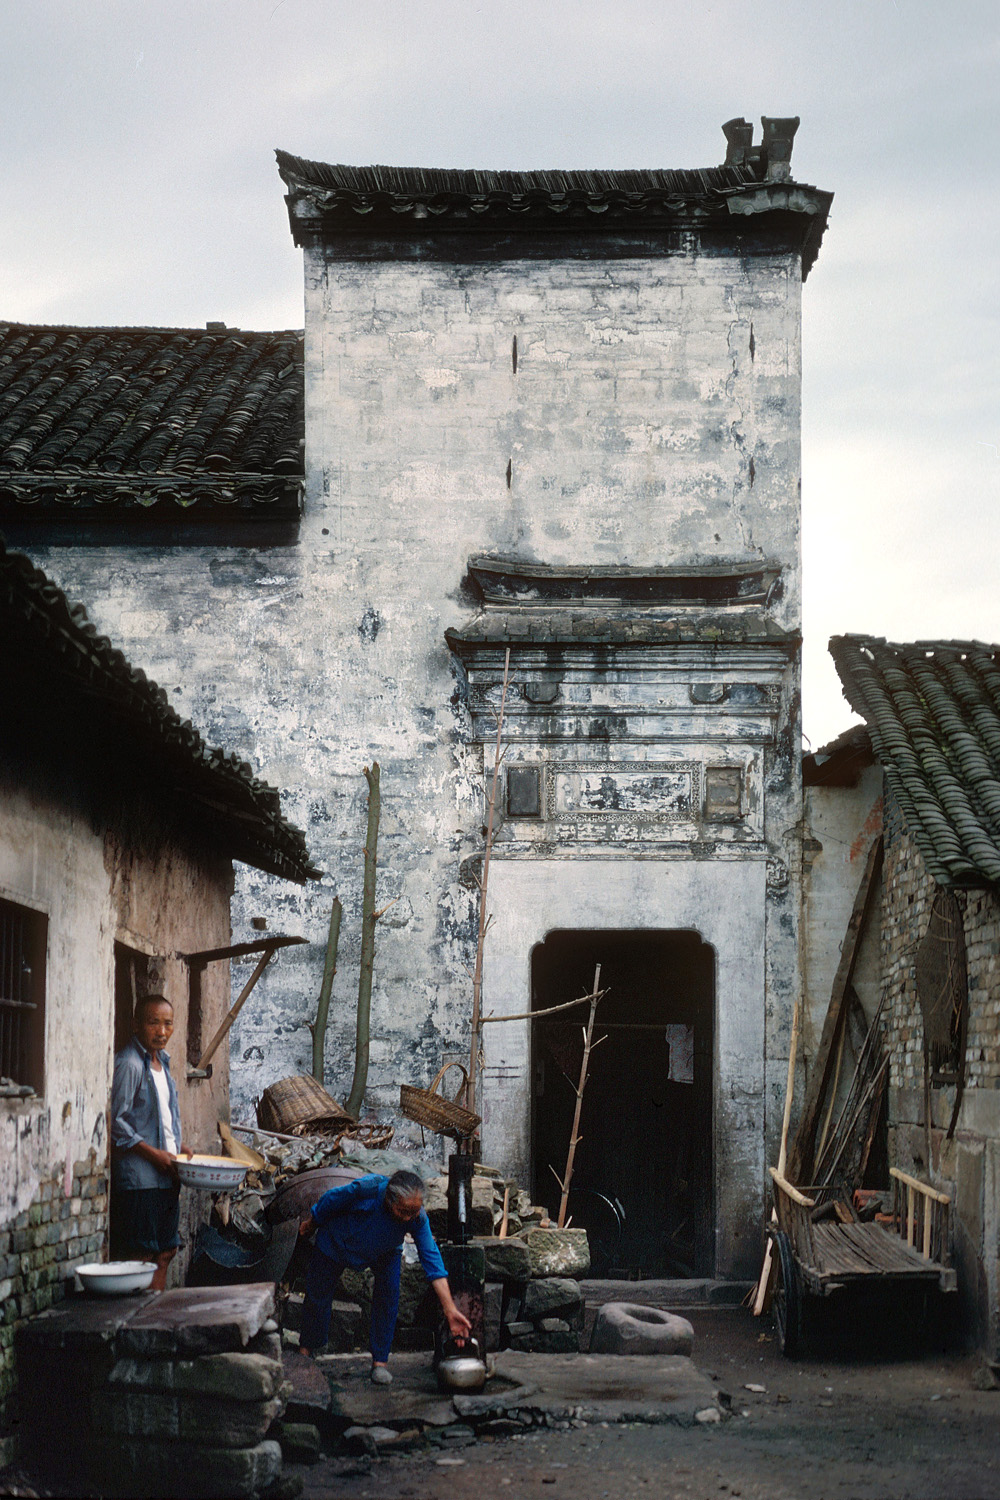 bill-hocker-tungxi-sen-anhui-china-1981